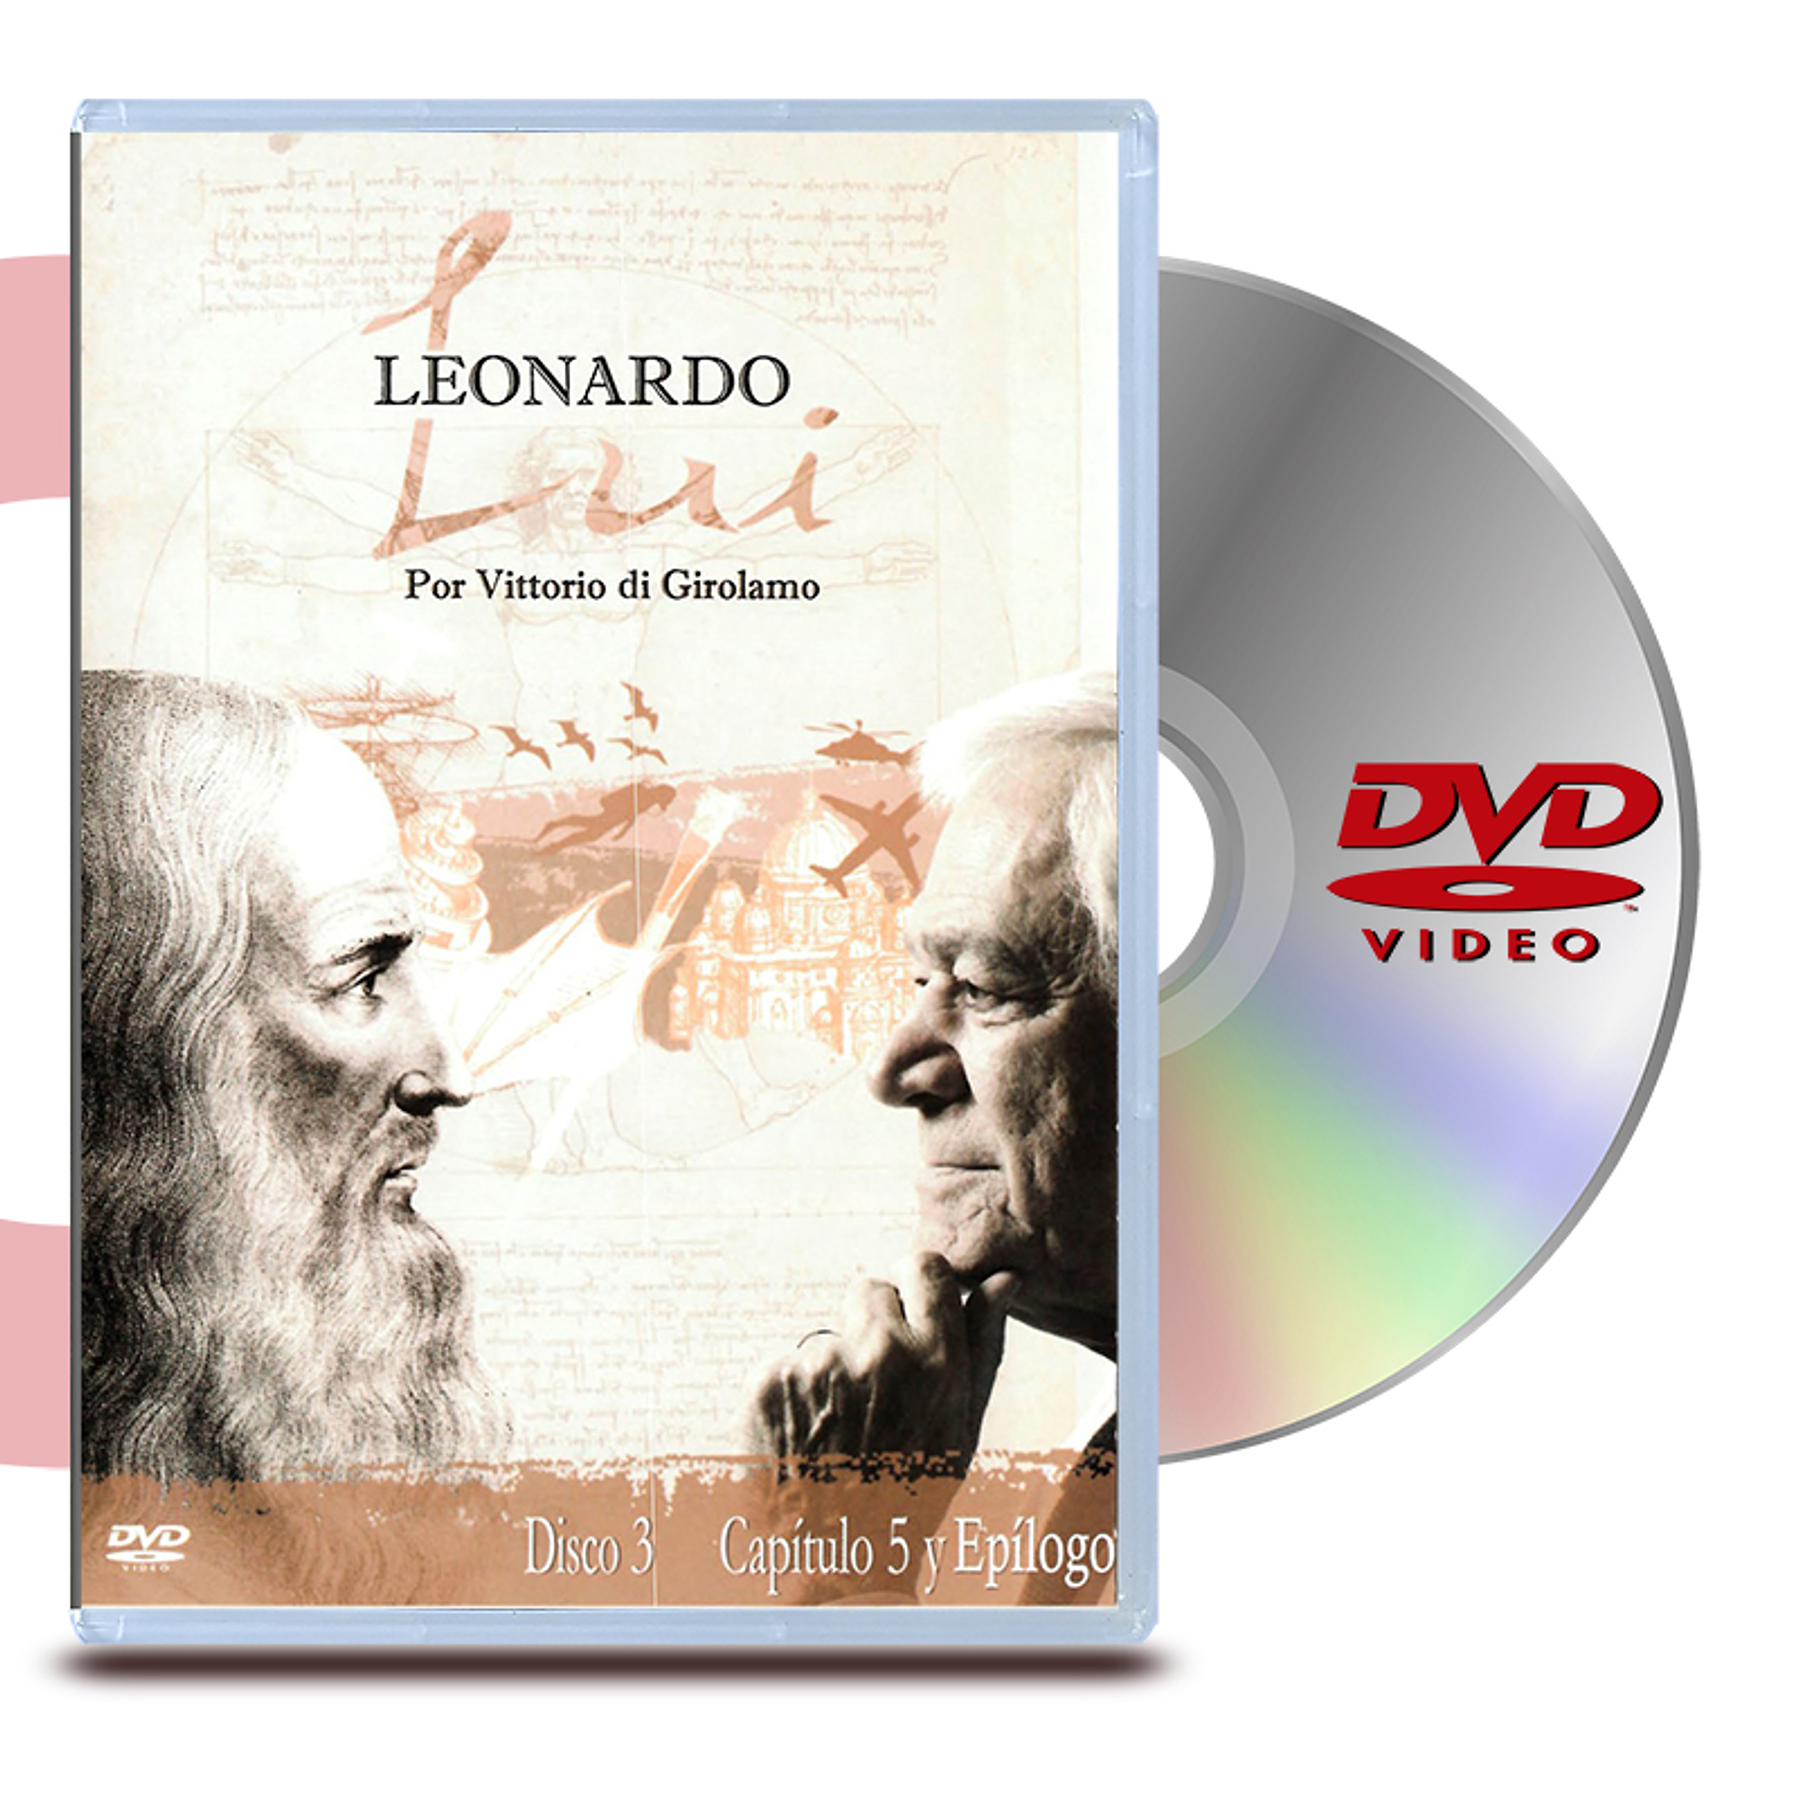 DVD LEONARDO LUI: DISCO 3 (CAPITULOS 5 Y EPILOGO)